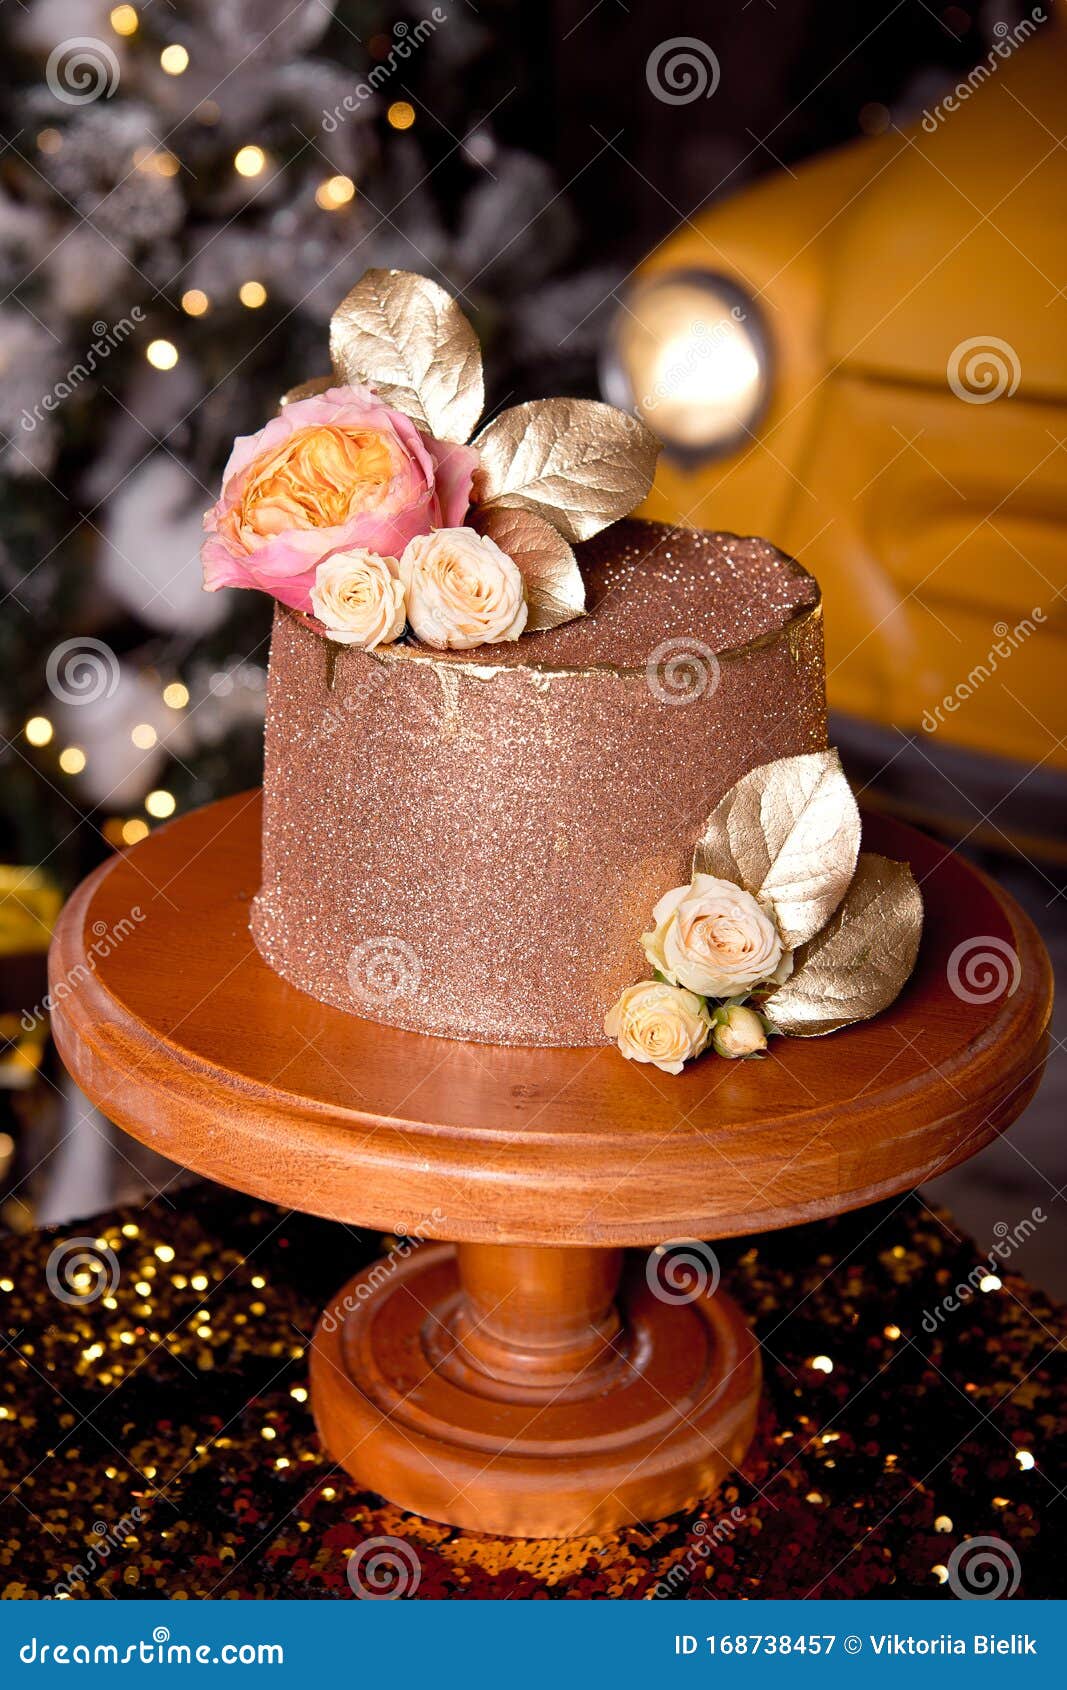 Torta De Chocolate Con Relleno De Frambuesa Y Crema De Pistacho, Decorada  Con Rosas Y Chispas De Gelatina Dorada En El Nuevo Imagen de archivo -  Imagen de tuerca, esmalte: 168738457